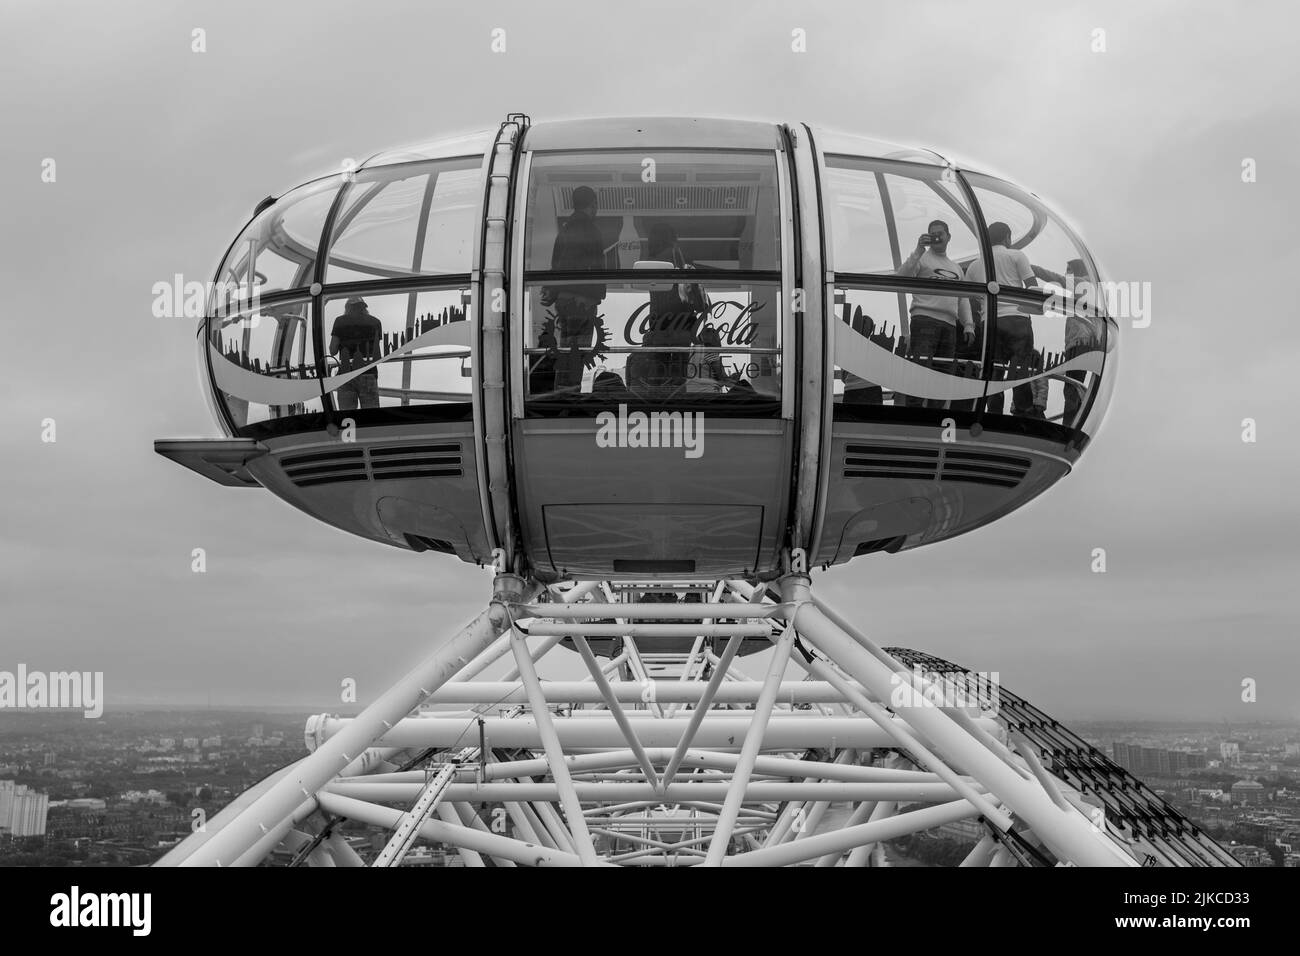 Una vista del London Eye pod che si affaccia sul paese nel Regno Unito in scala di grigi Foto Stock